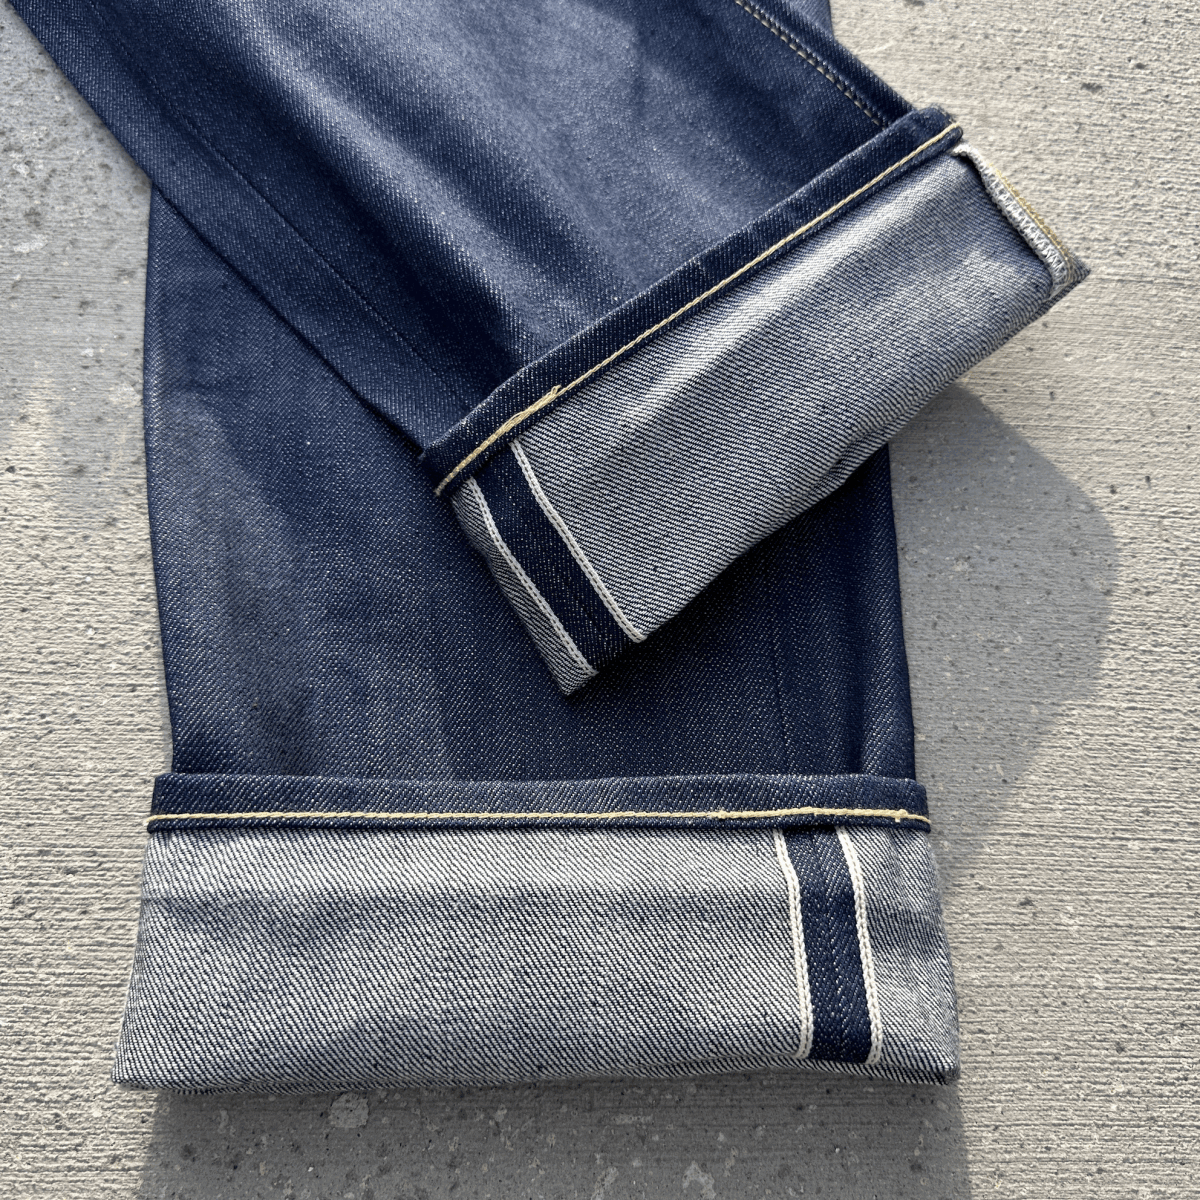  сделано в Японии non woshu1966 год модели LEVI\'S 501XX 66501-0146 W33 L34 rigid прекрасный товар джинсы Denim брюки 665010146 Made In Japan